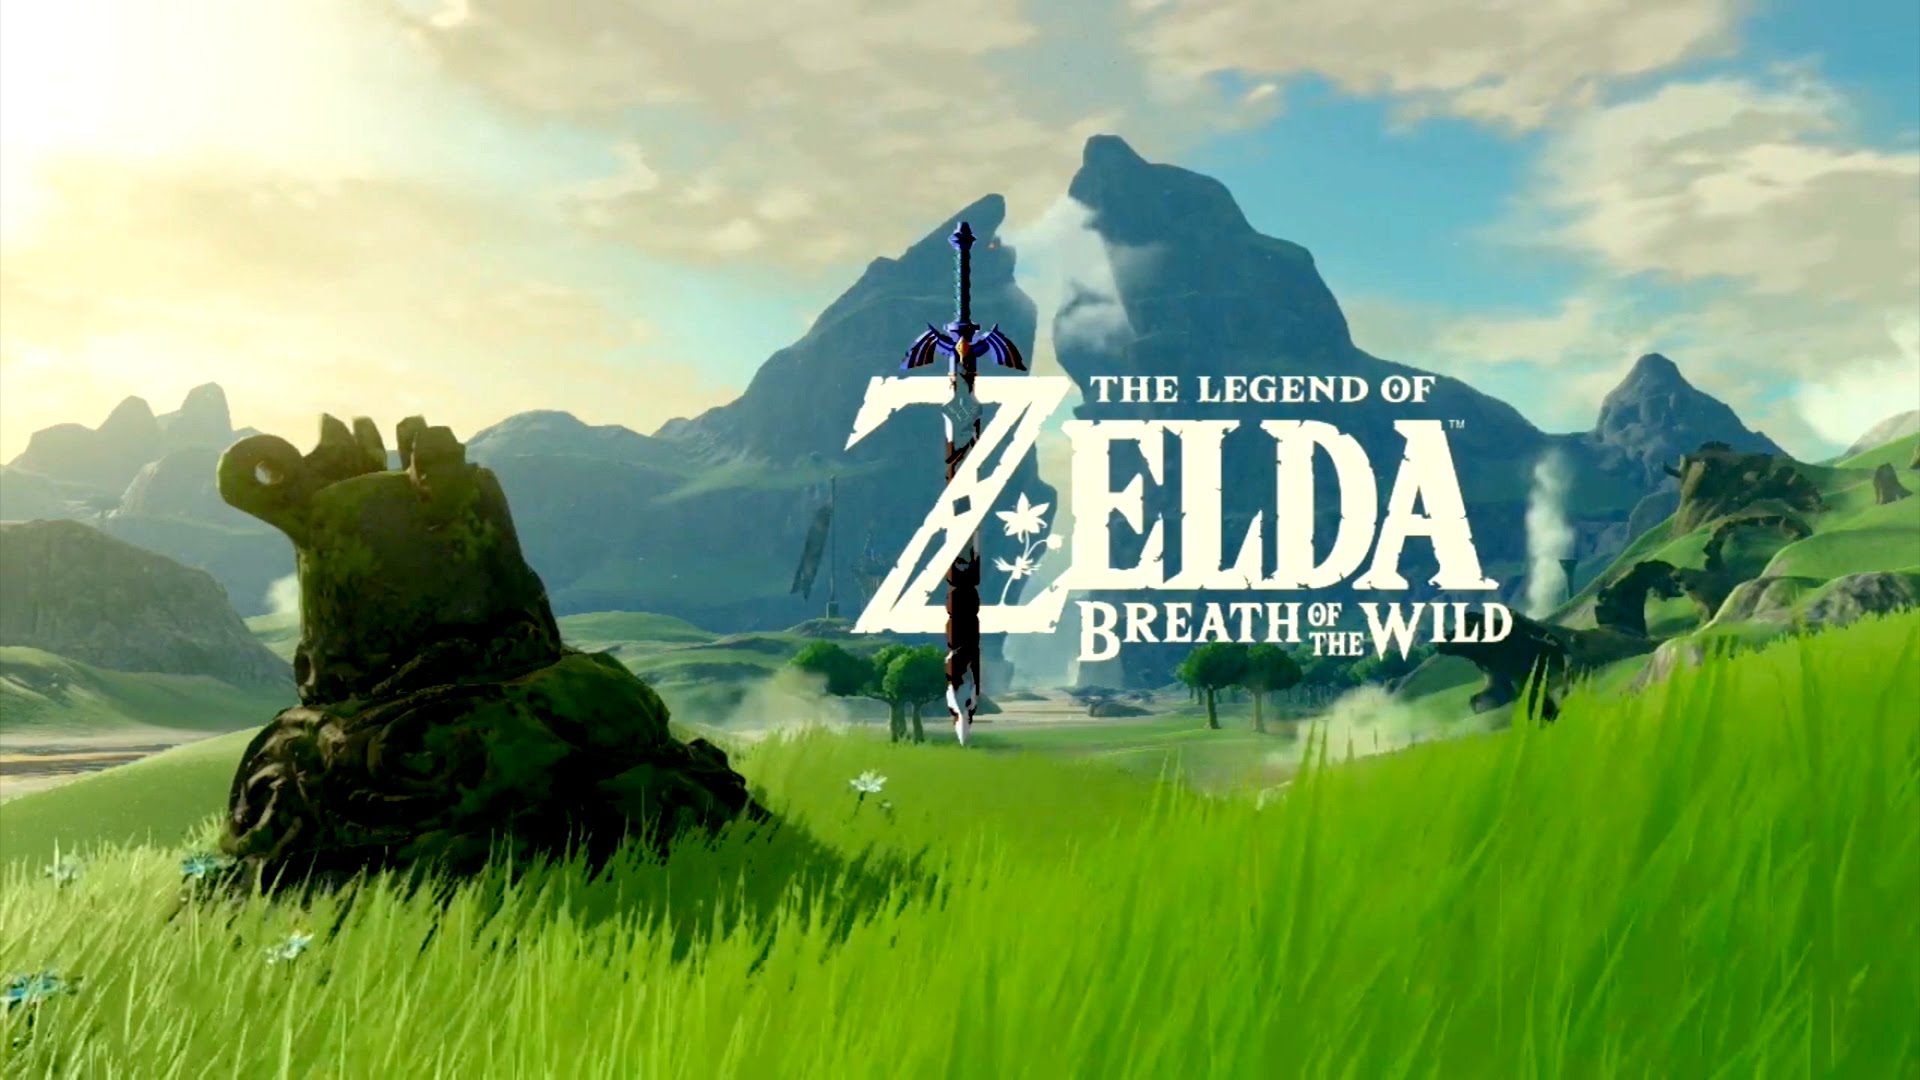 The Legend of Zelda: Breath of the Wild sviluppo completato